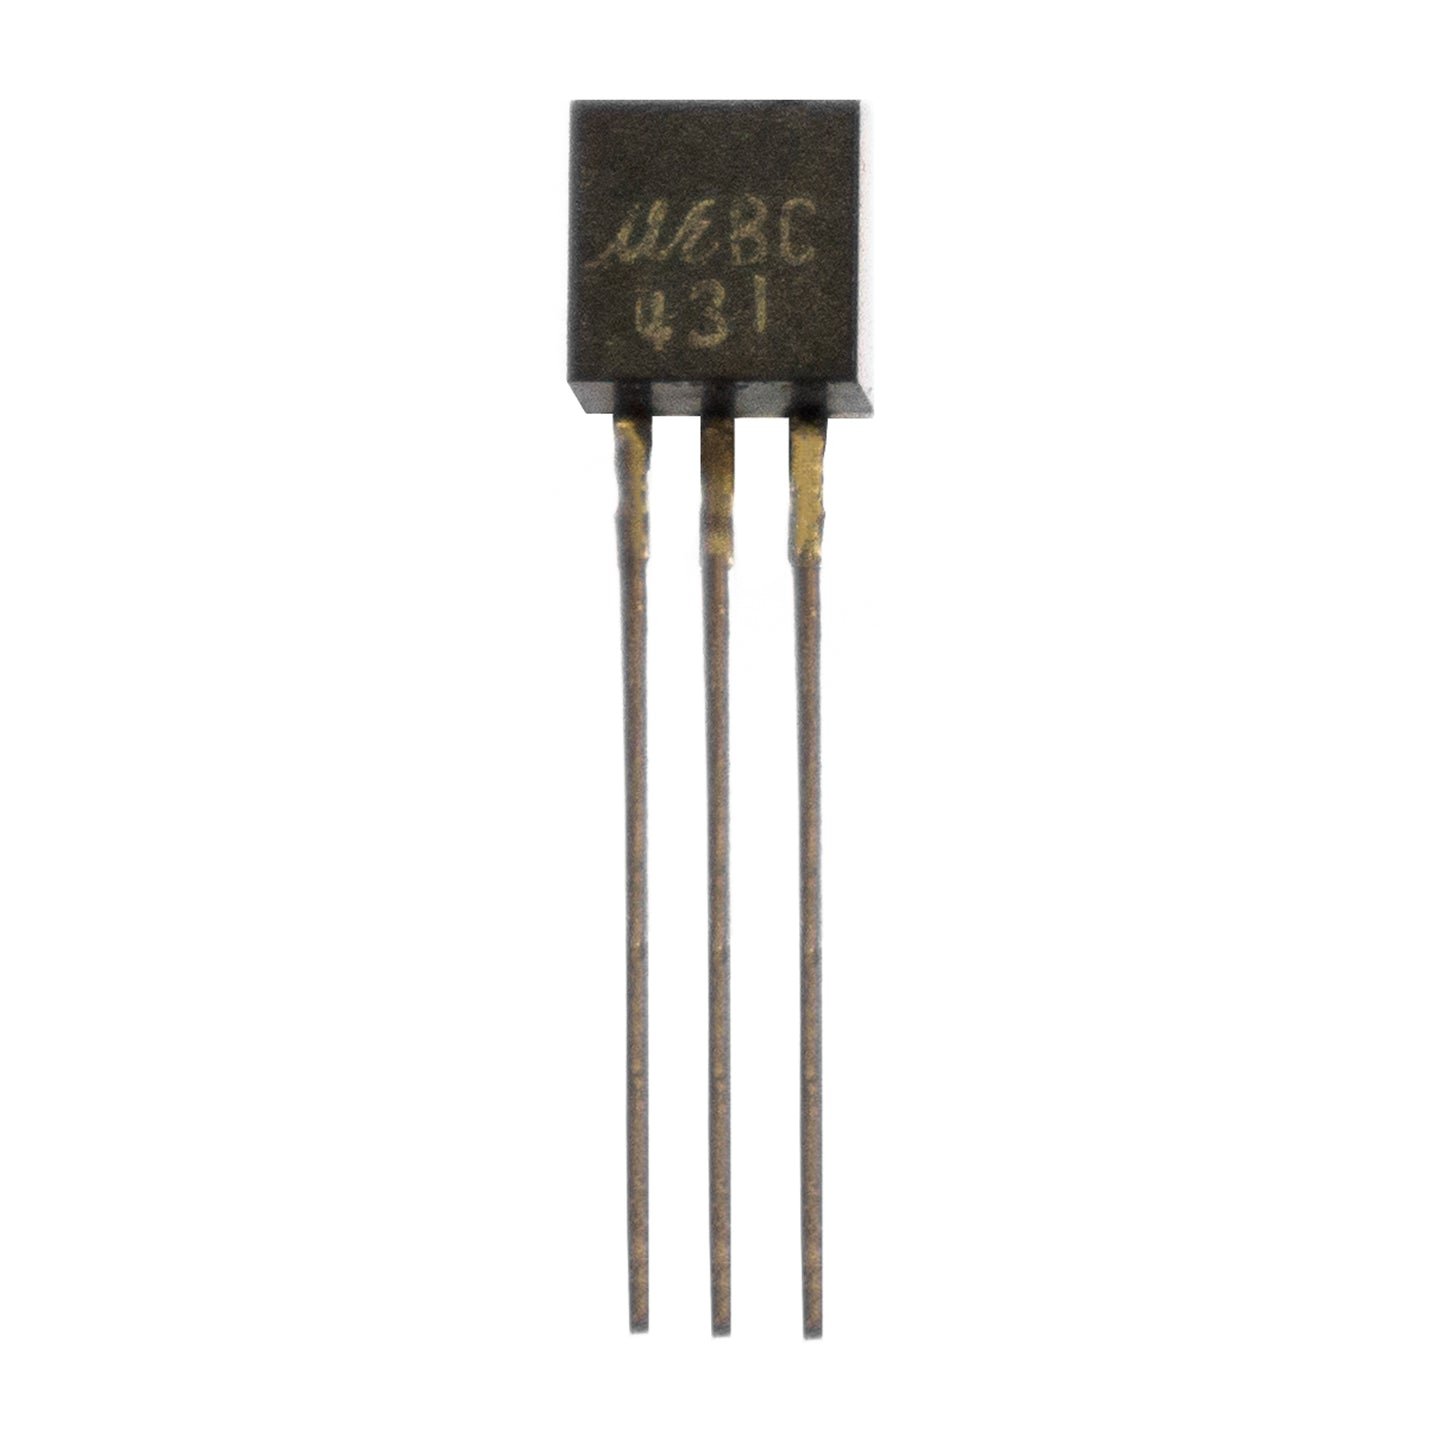 BC431 componente elettronico, circuito integrato, transistor, 3 contatti